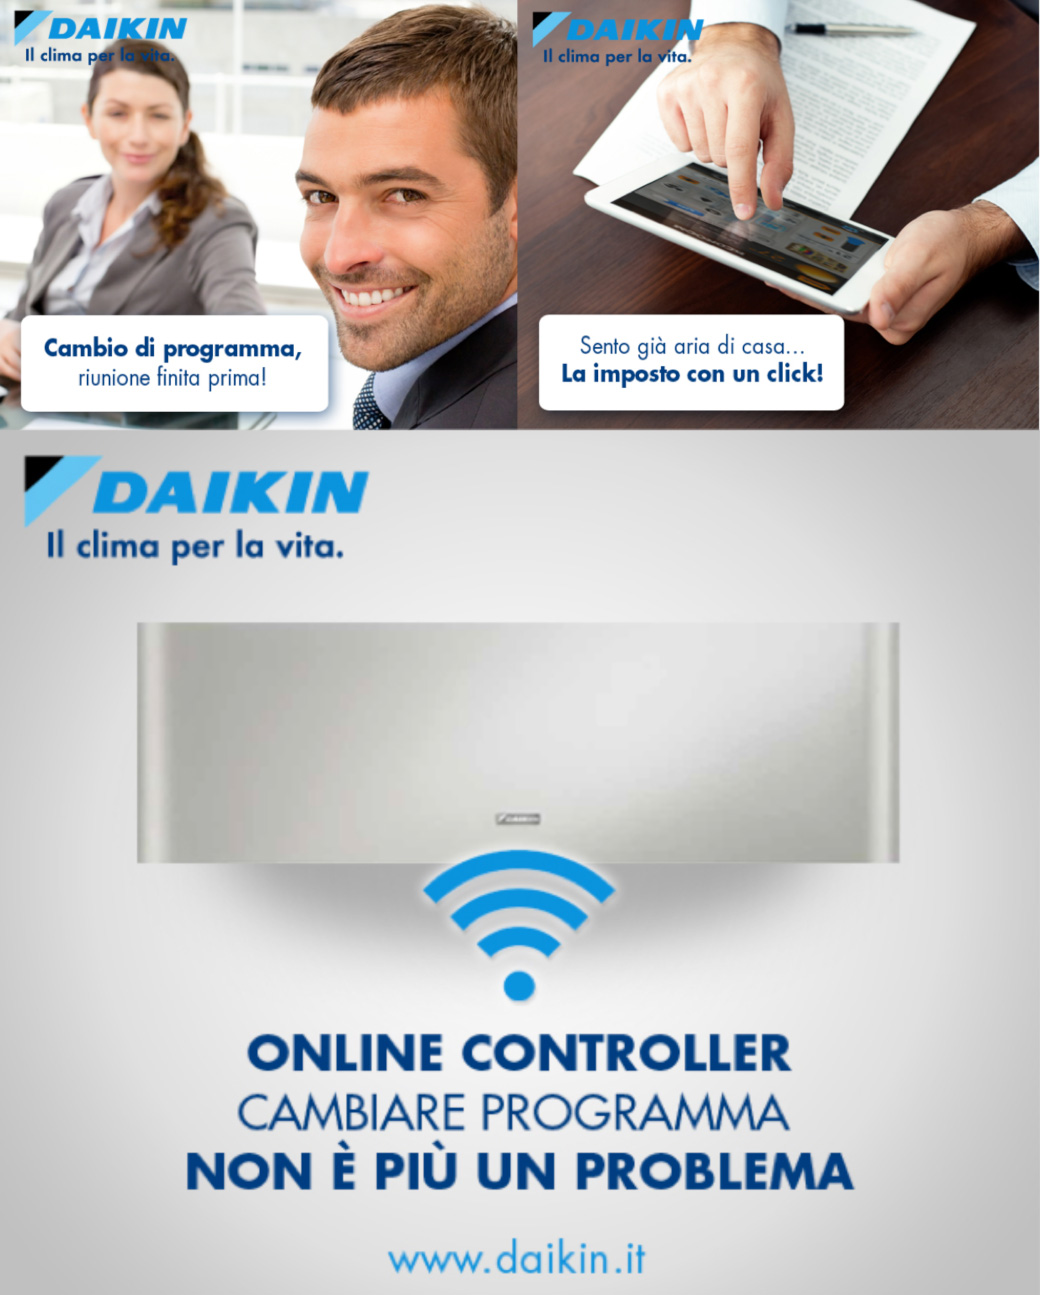 Cambiate programma con Daikin. E’ online la nuova campagna web